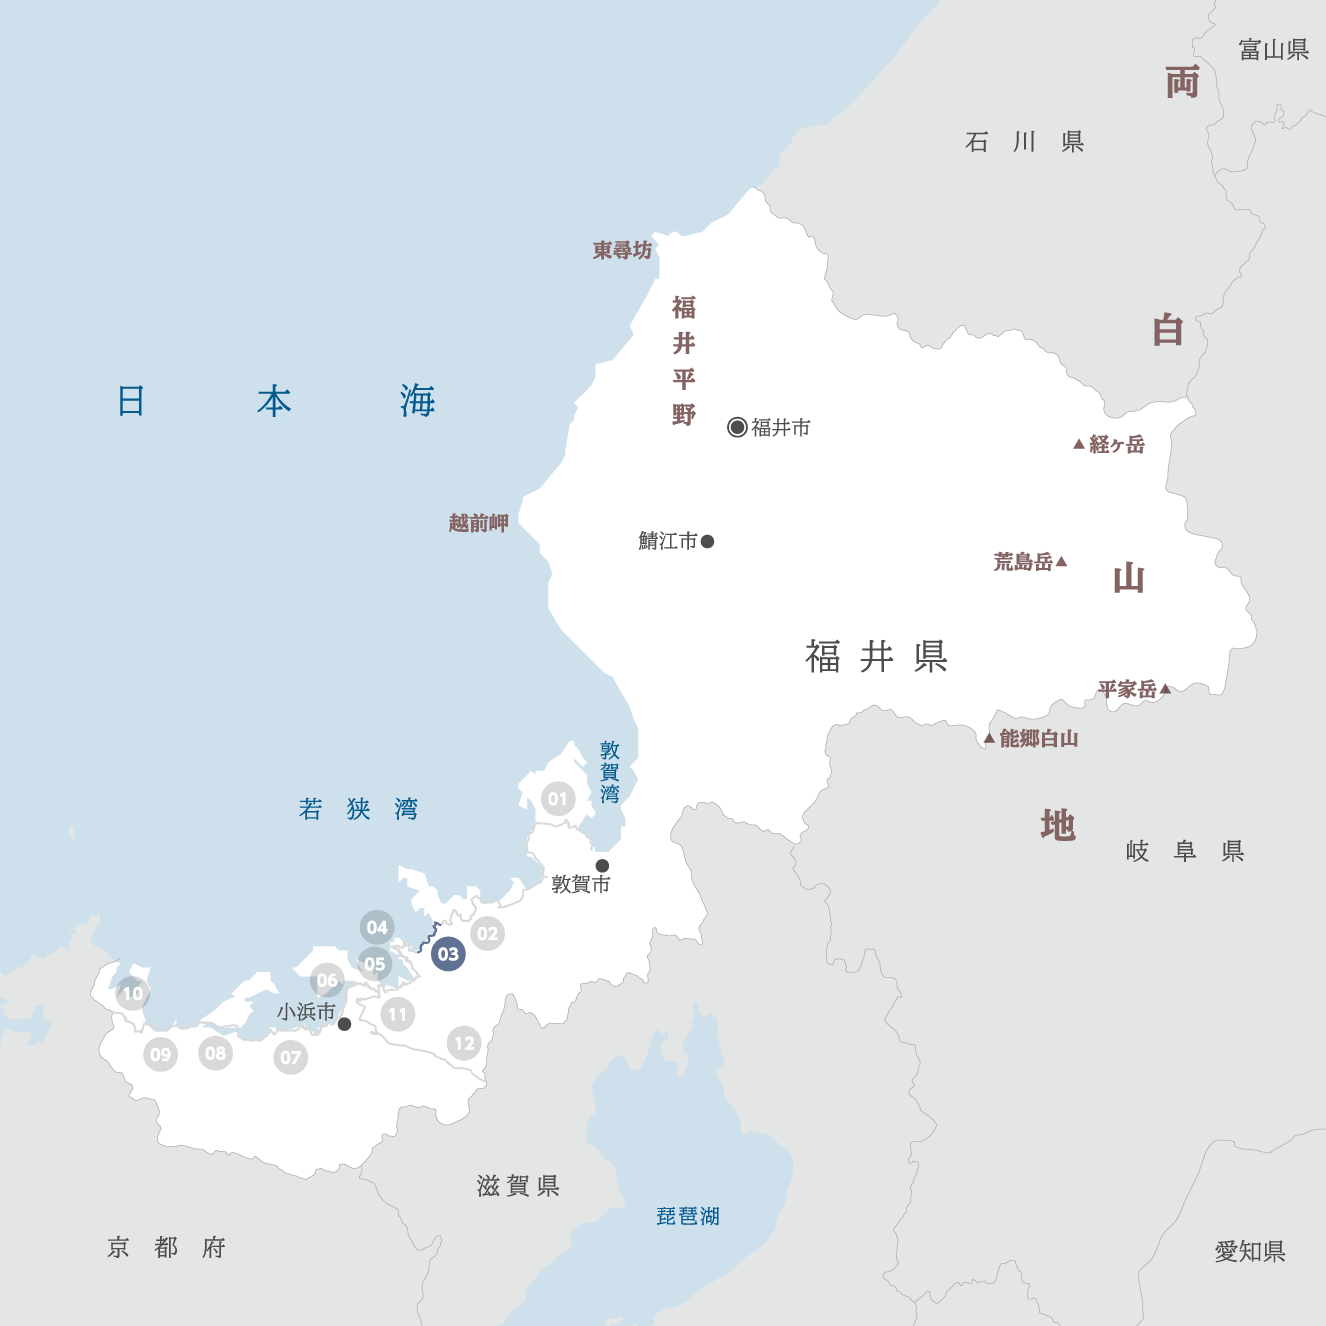 福井県の地図